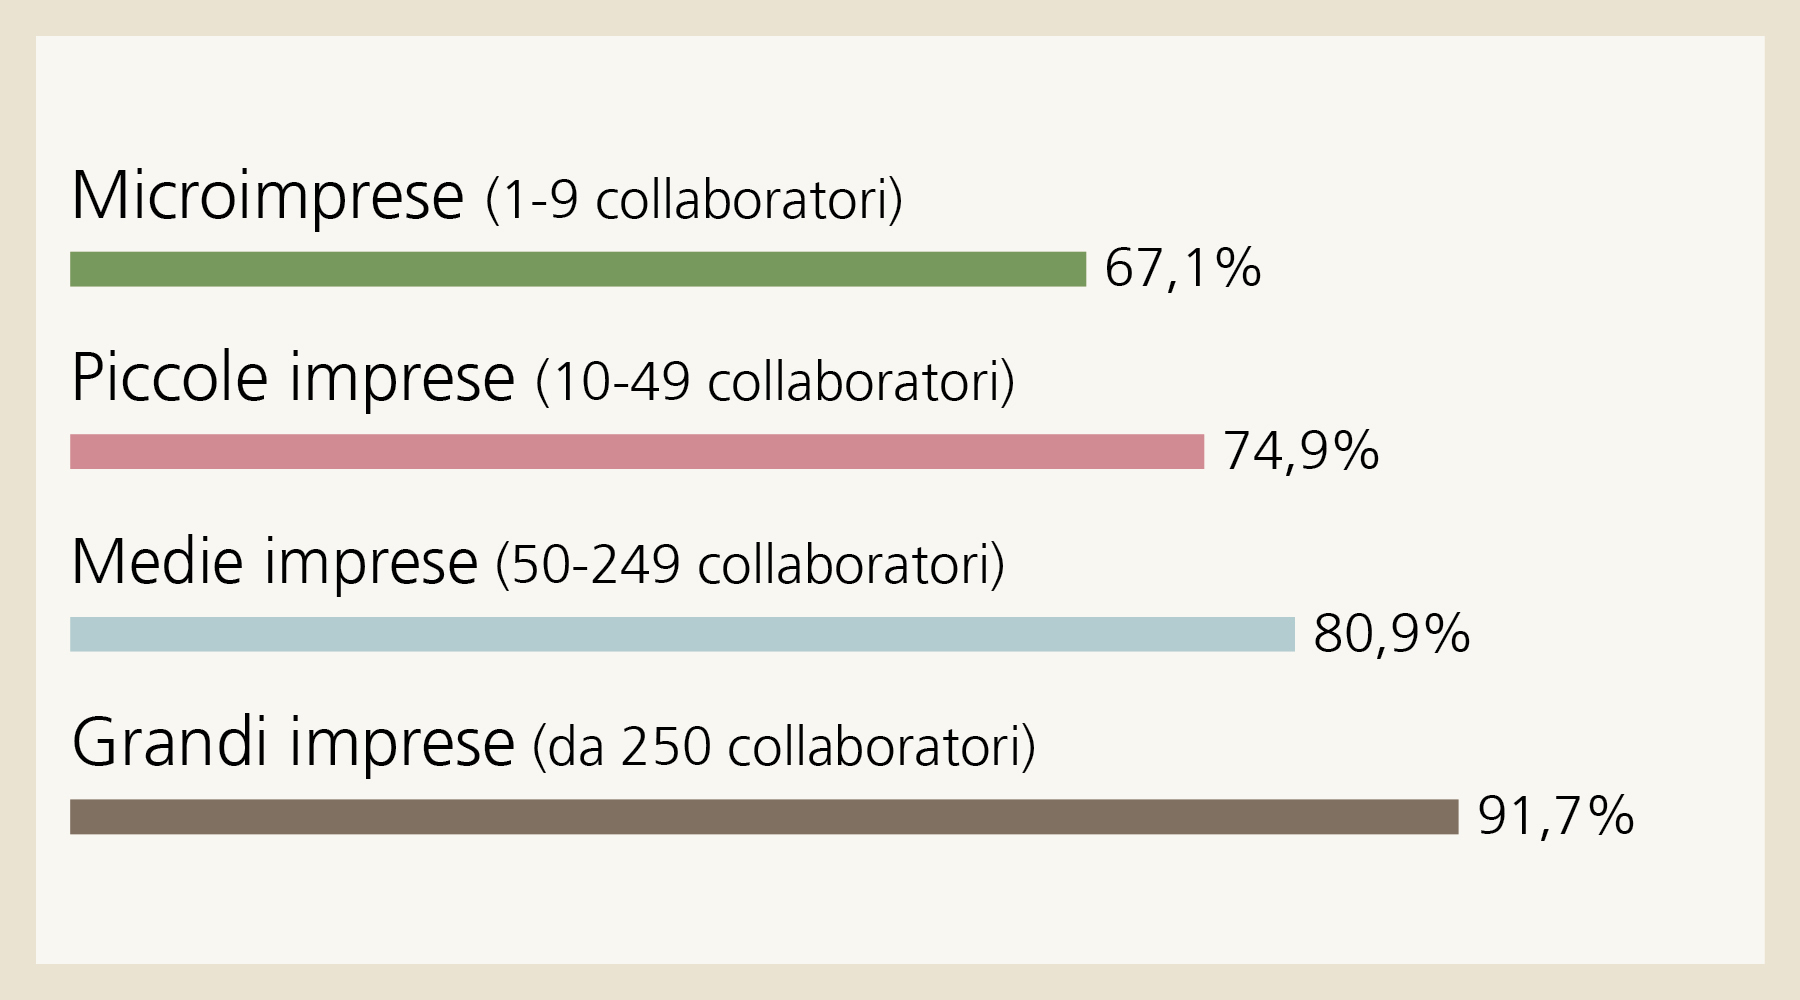 Rilevanza: Il 67,1% delle microimprese (1-9 collaboratori) attribuisce grande importanza alla trasformazione digitale, contro il 91,7% di quelle grandi (da 250 collaboratori). 